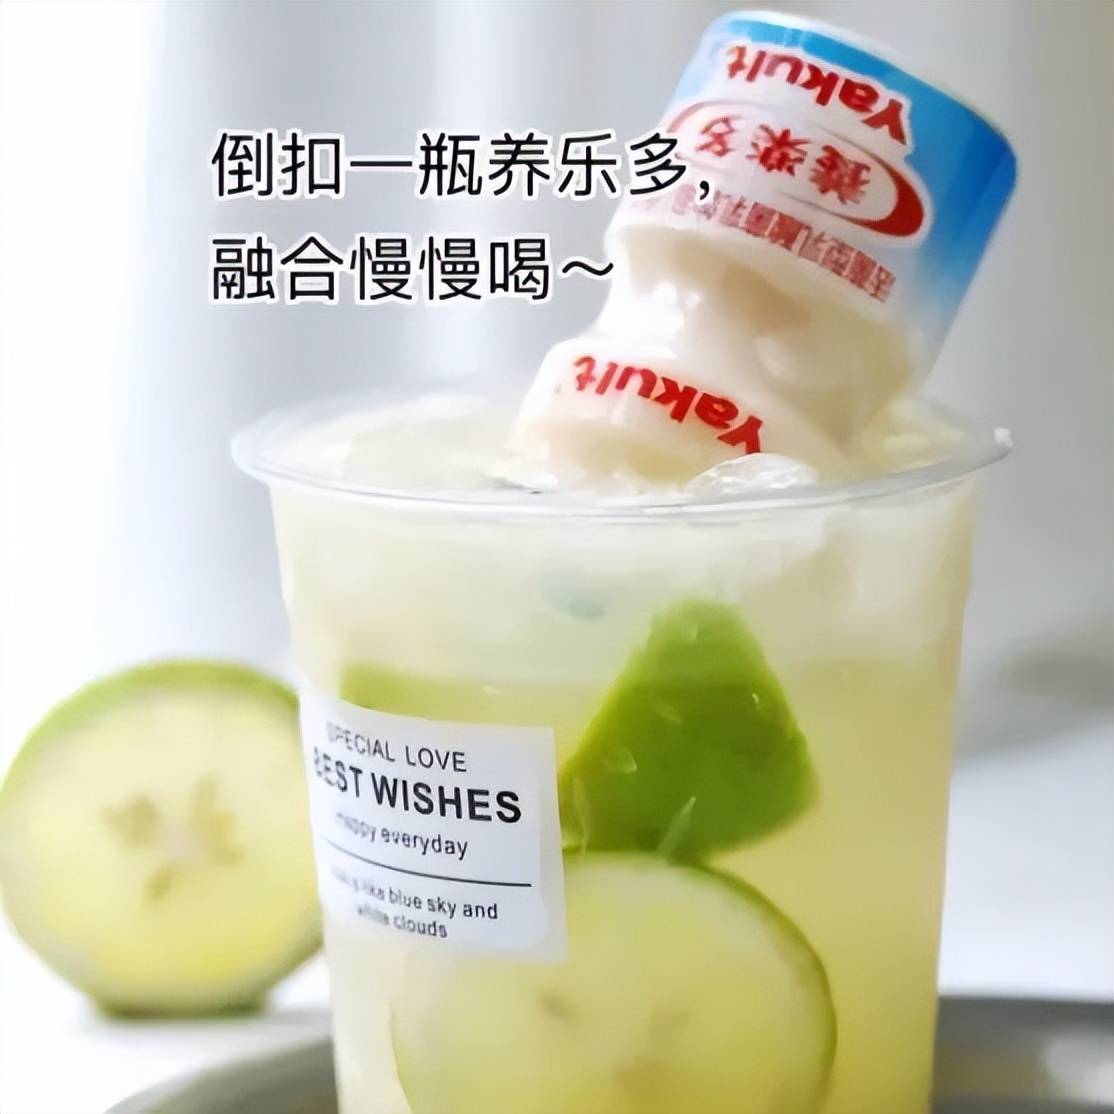 出汁(减脂期可不加糖浆)制作tips以奶茶店夏天的点单王柠檬养乐多为例